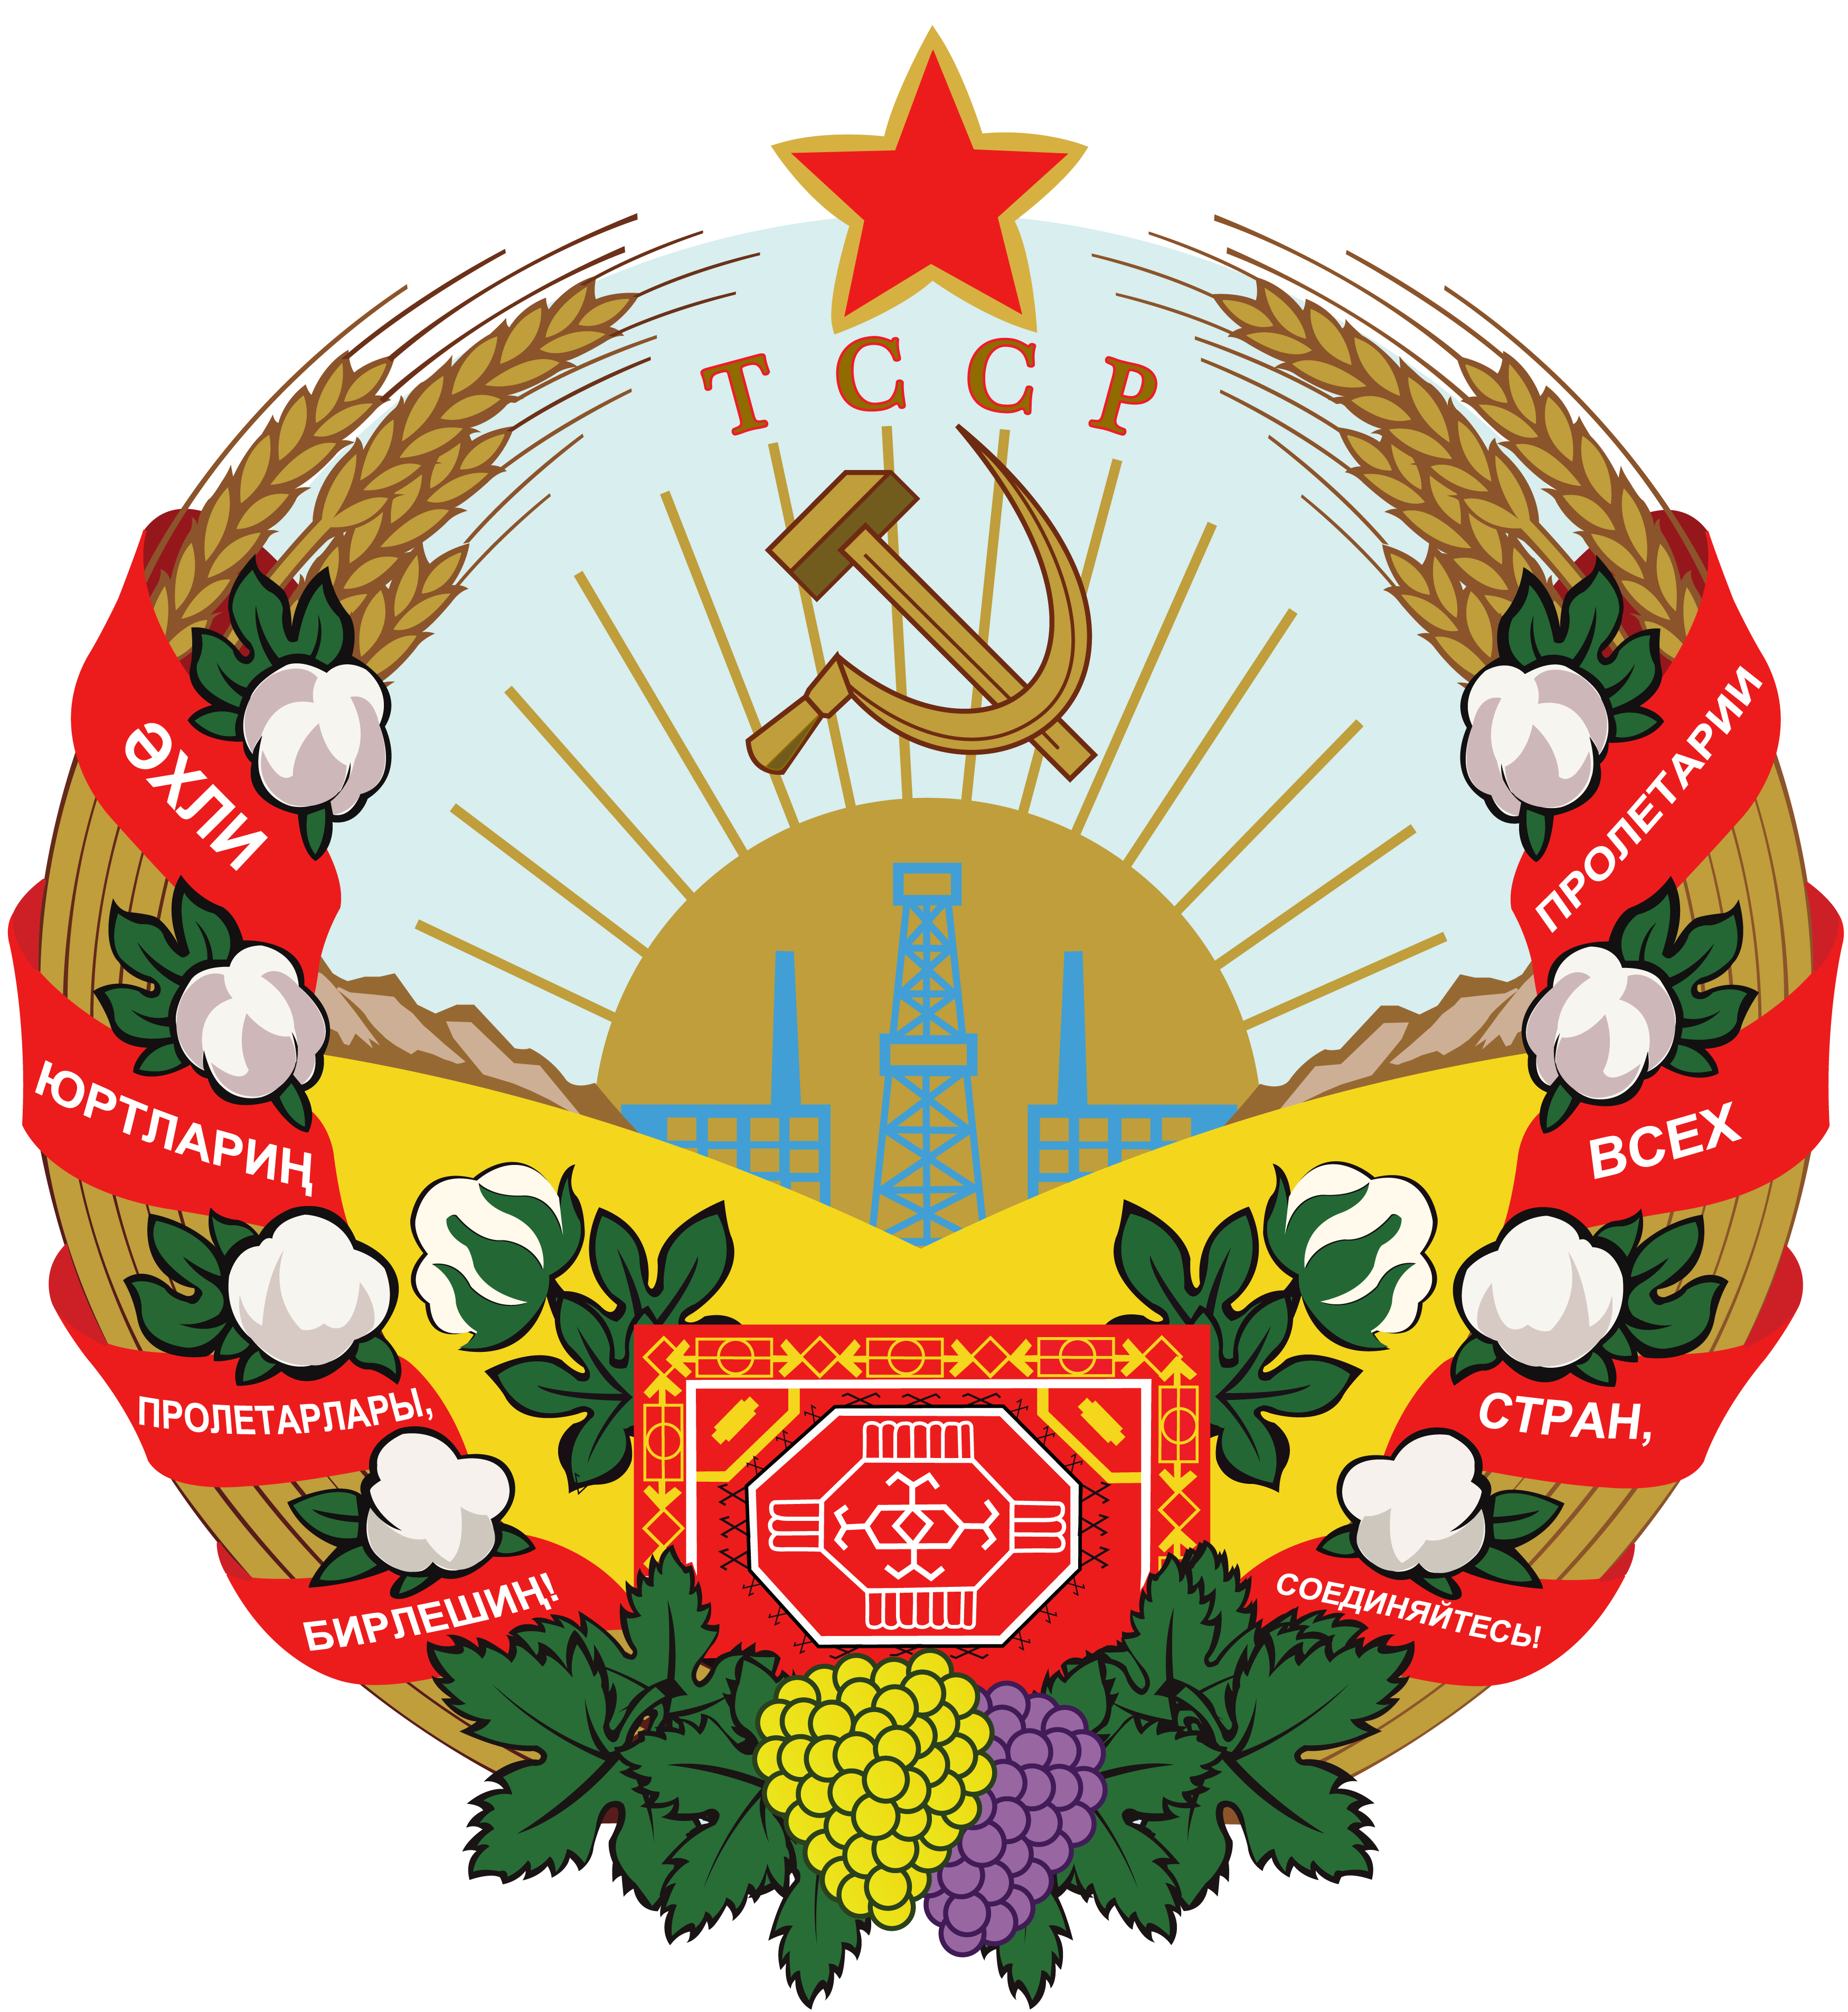 土庫曼蘇聯時期國徽